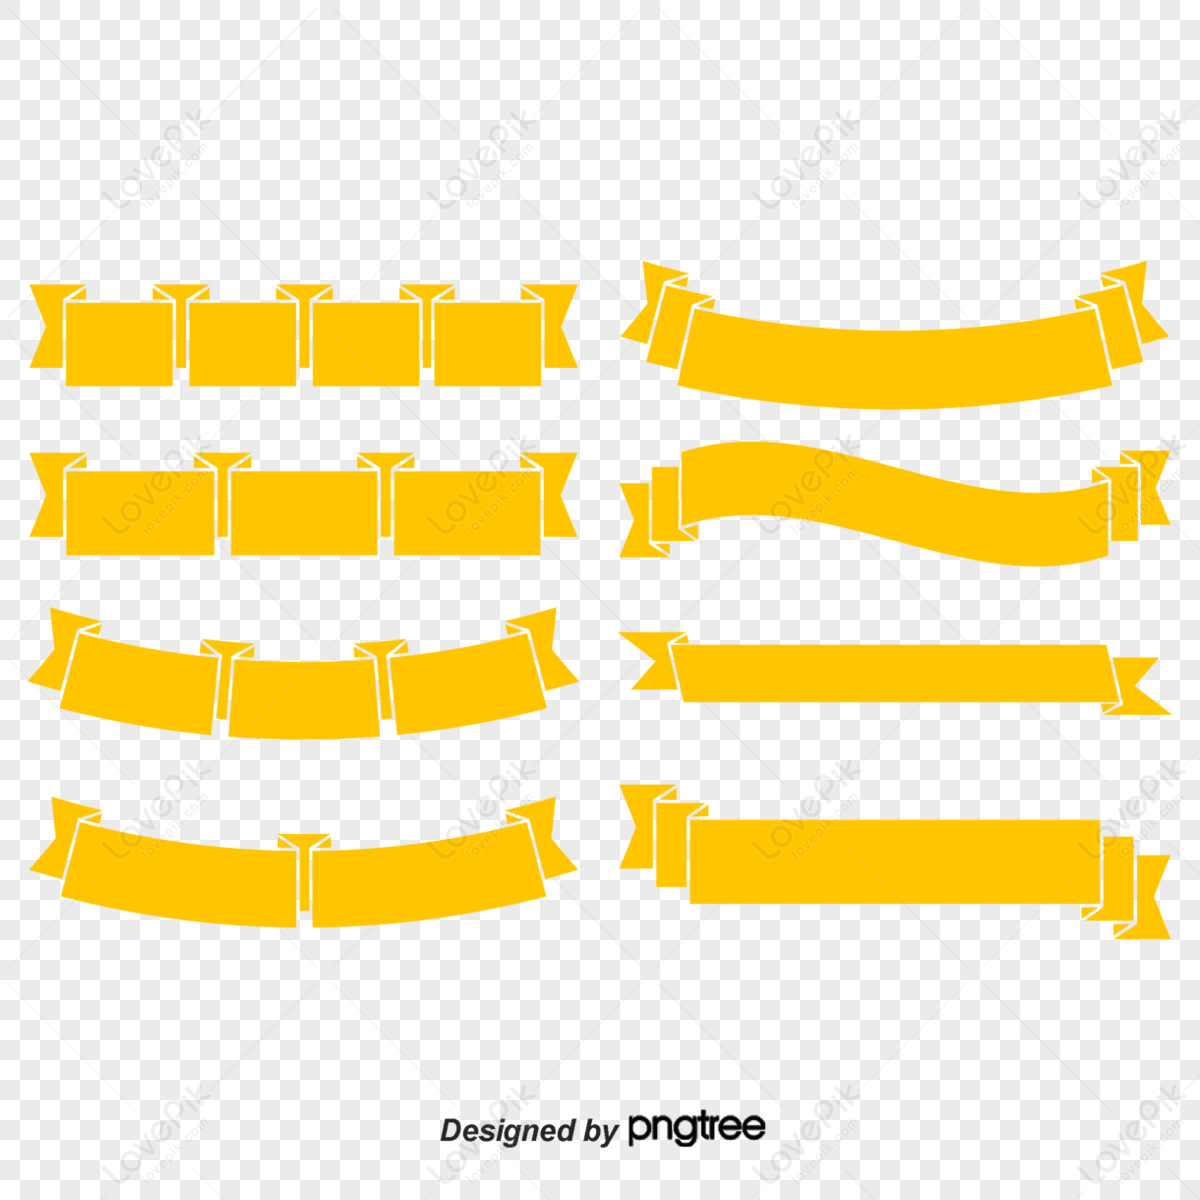 Orange Ribbon png download - 2209*981 - Free Transparent Ribbon